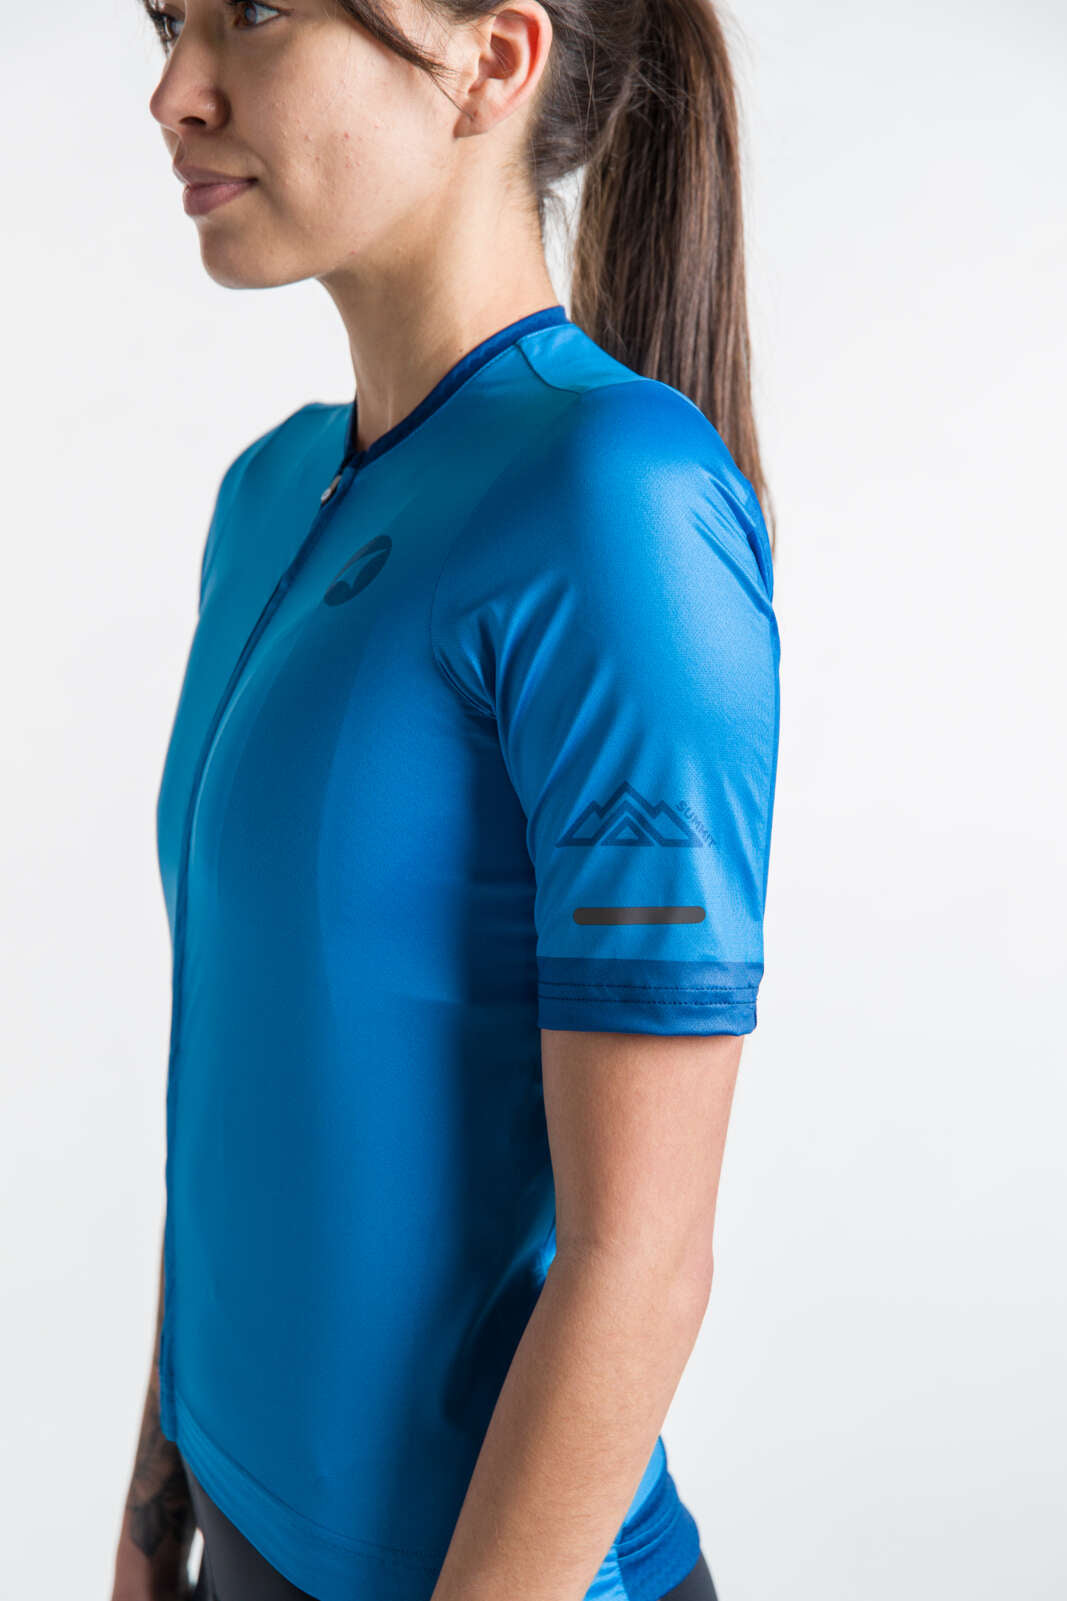 Women's Best Blue Cycling Jersey - Summit Sleeve Detail